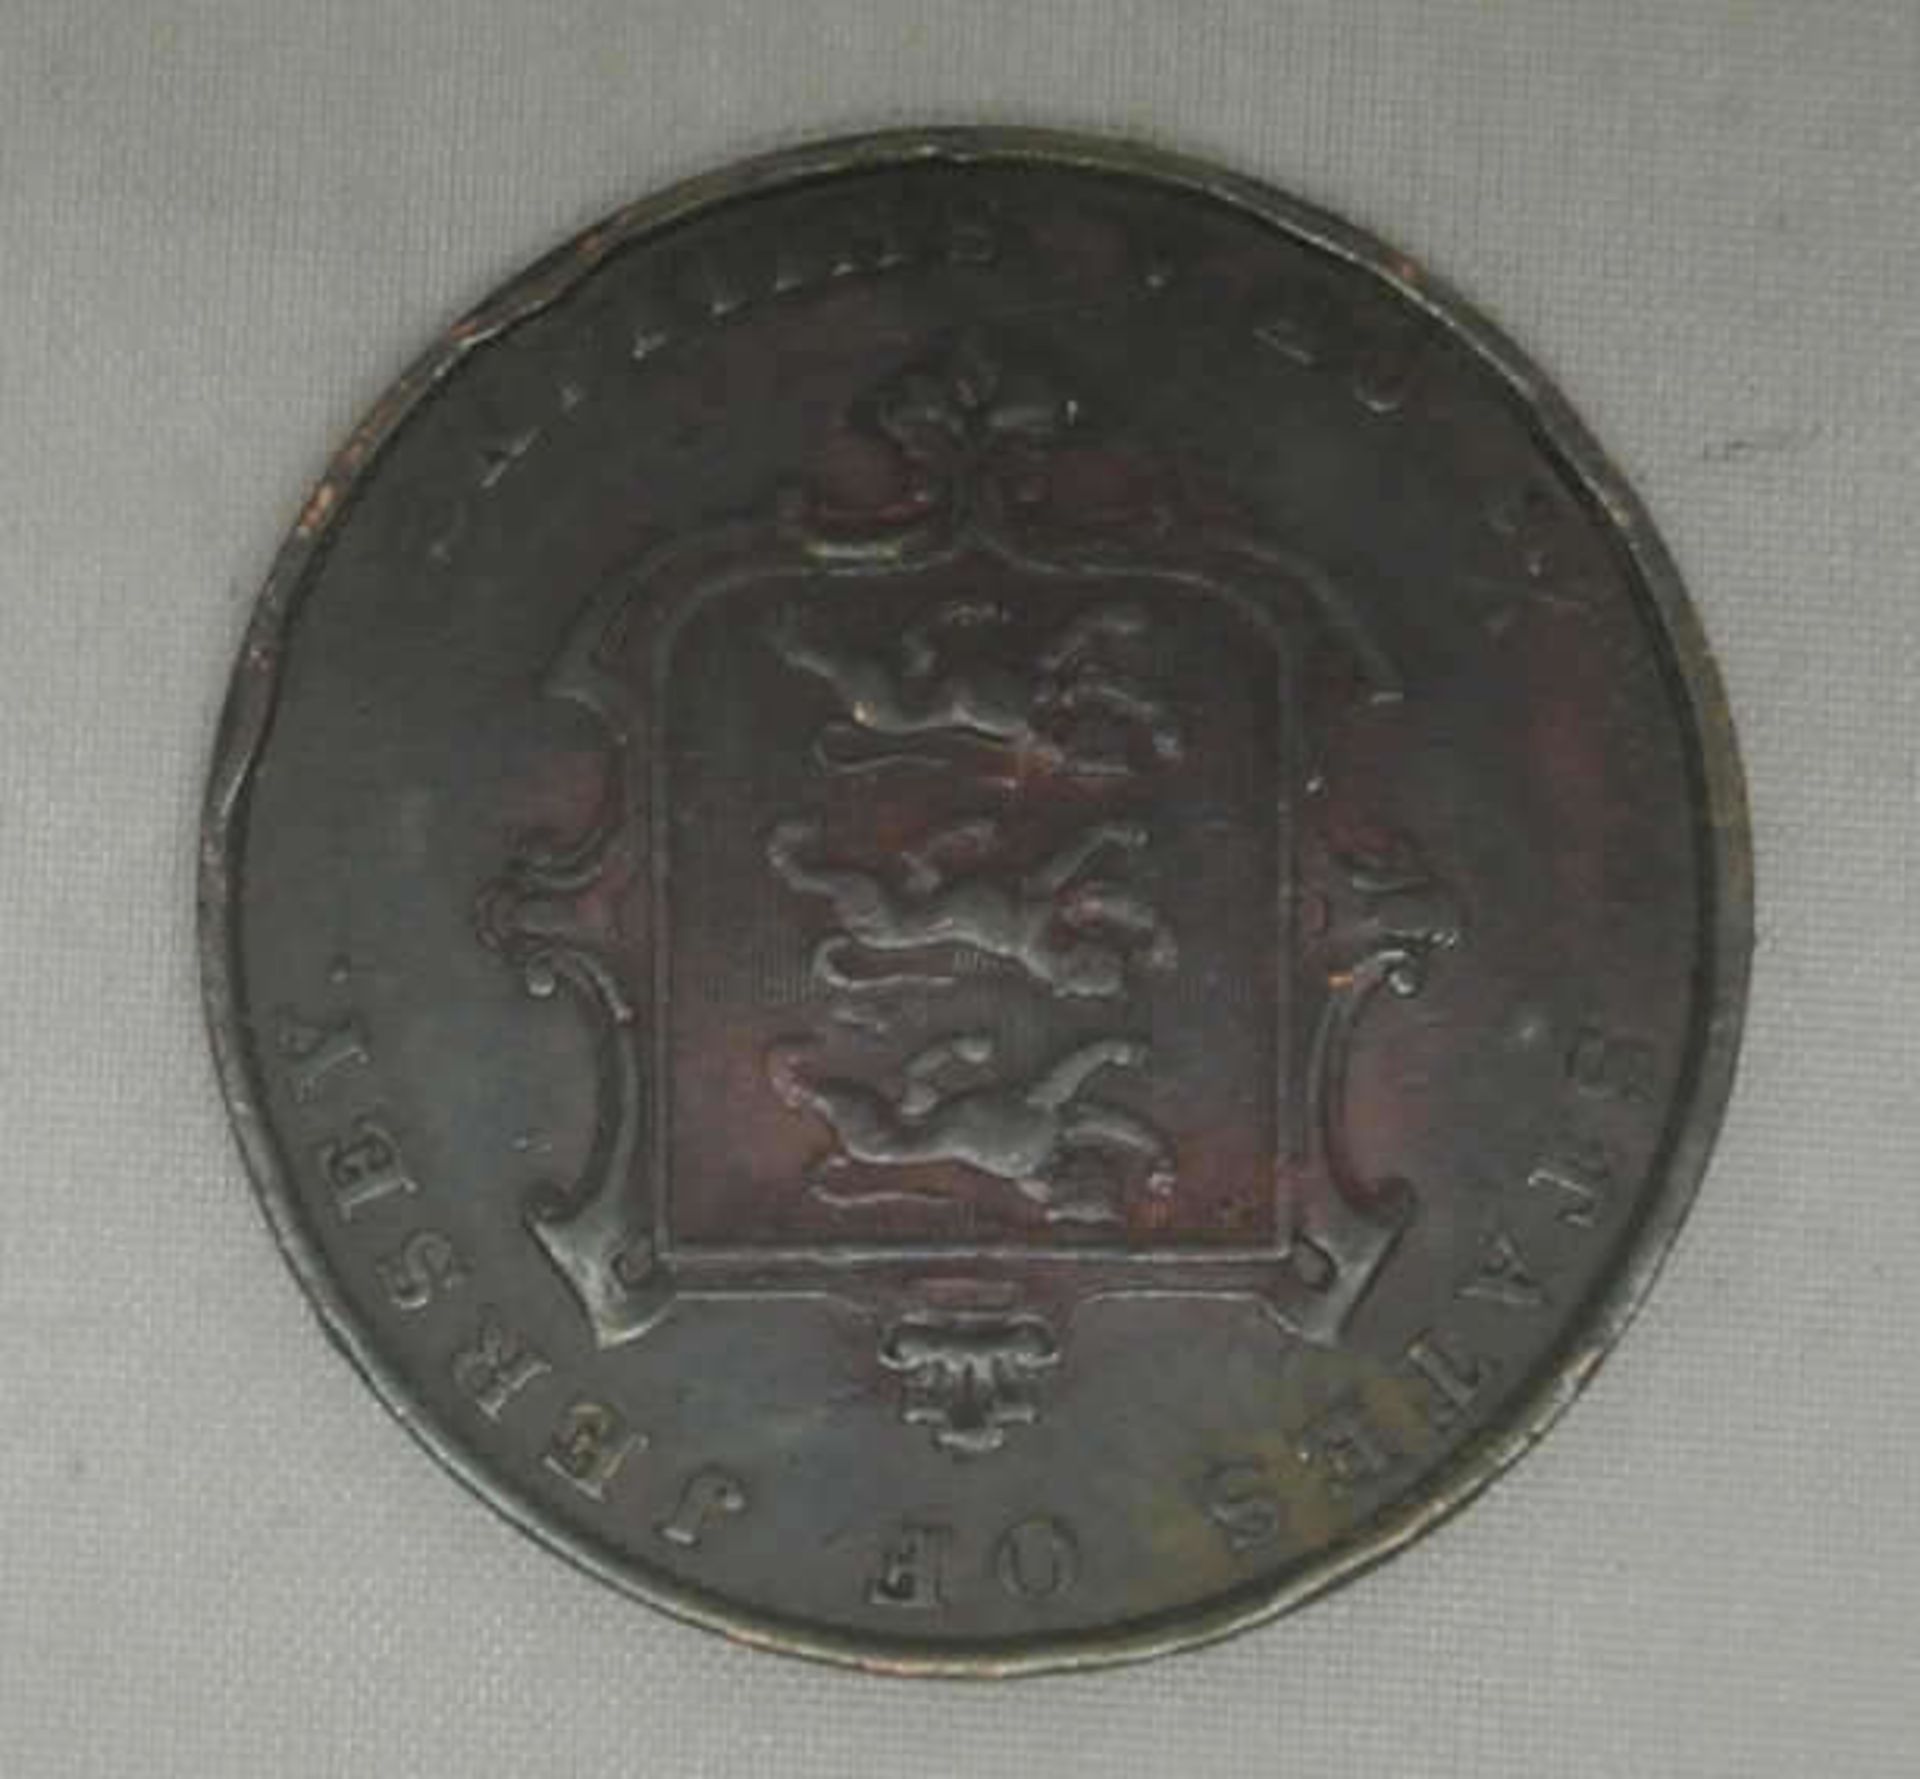 Jersey, 1/13 Shilling of Victoria 1844, Kupfer, mit Randfehler. Auflage nur 27.000 Stück. Katalog